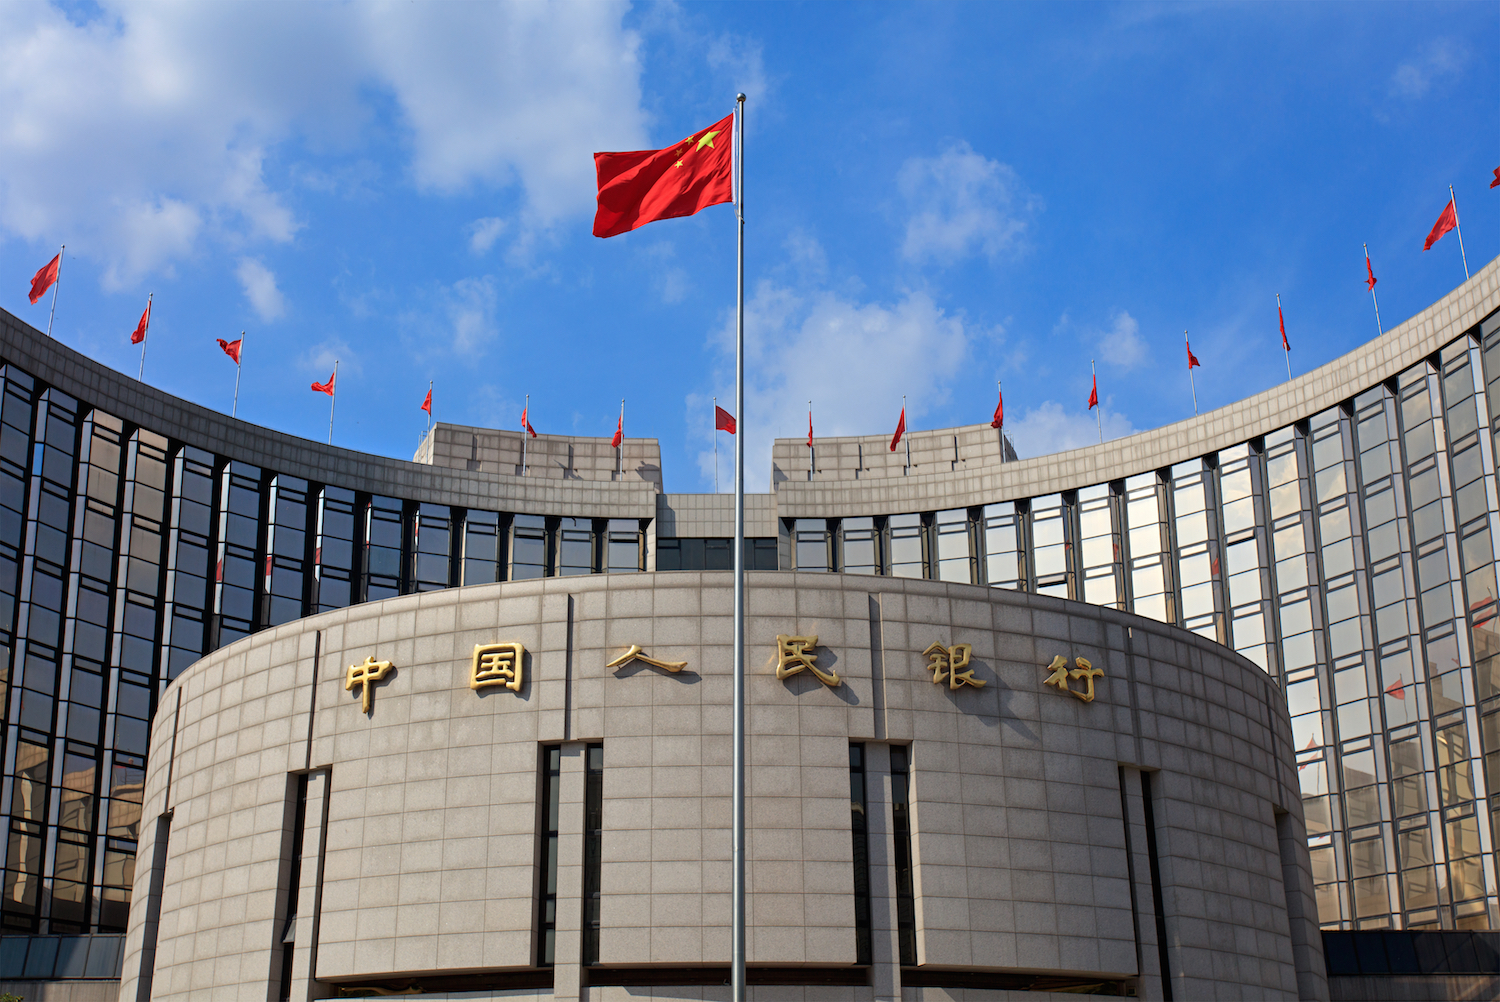 البنك المركزي الصيني يضخ 519 مليار يوان في النظام المصرفي